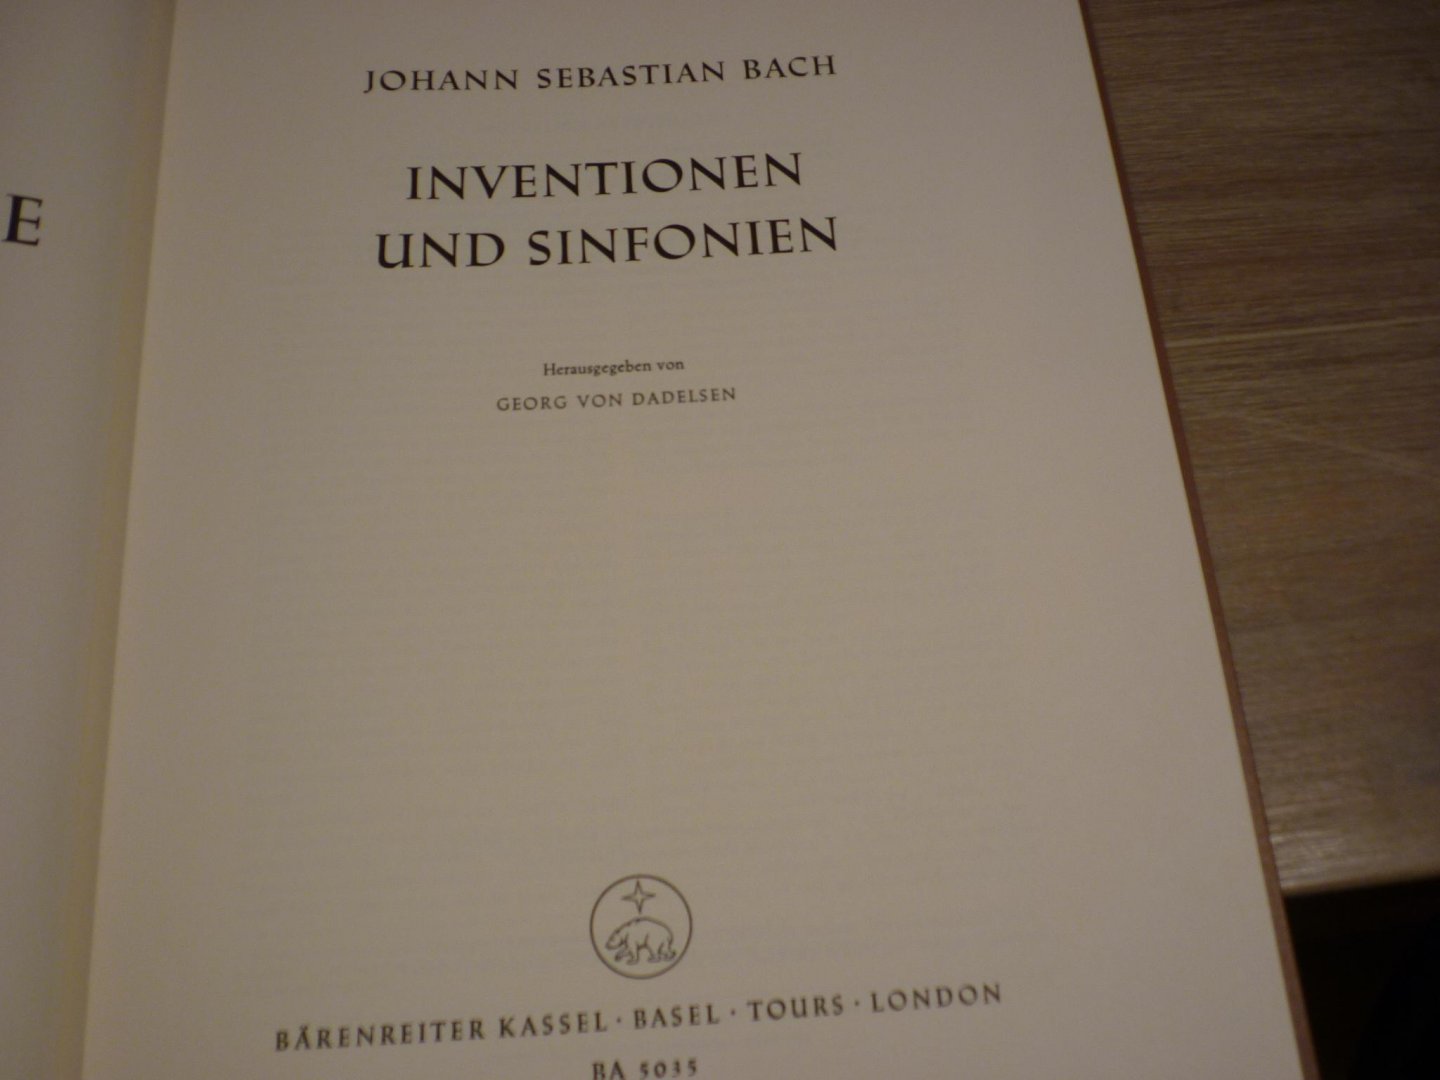 Bach; J. S. (1685-1750) - Inventionen und Sinfonien, Serie V: Klavier- und Lautenwerke - Band 3; Neue Ausgabe sämtlicher Werke